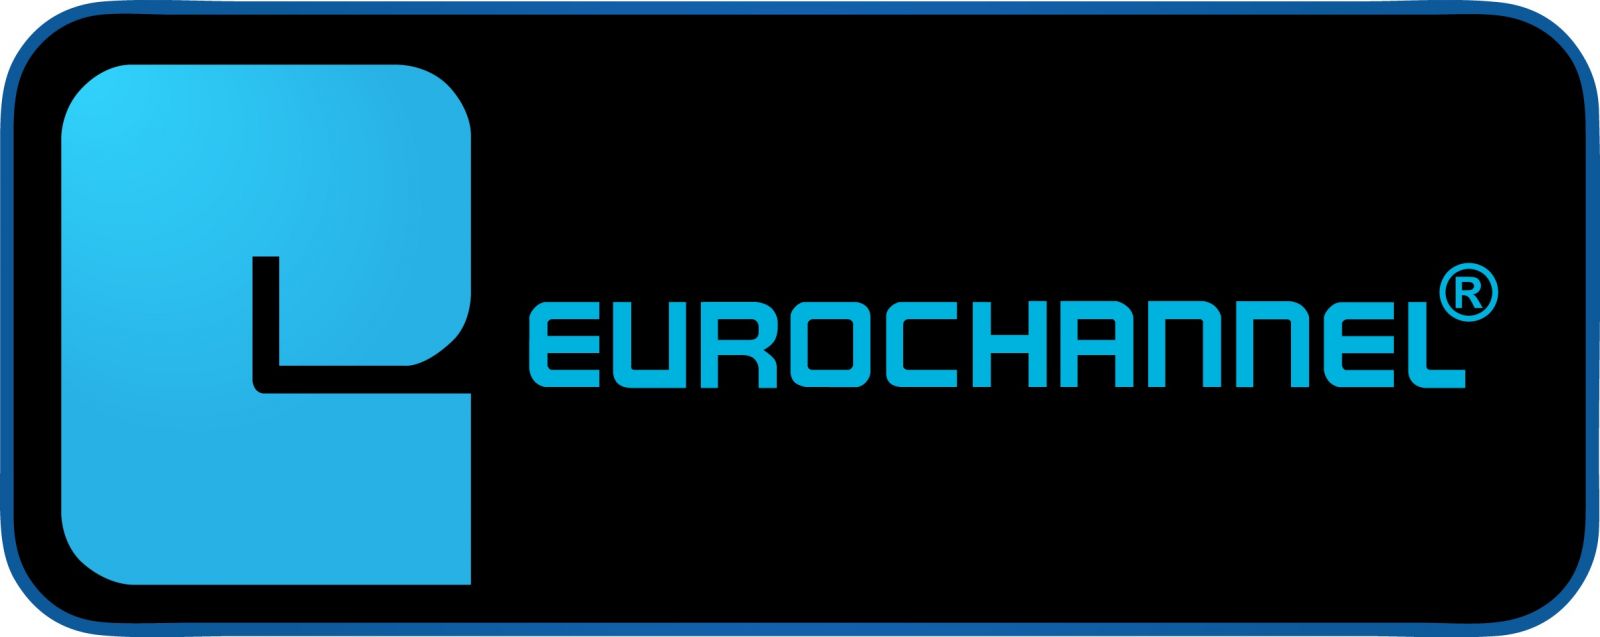 Eurochannel